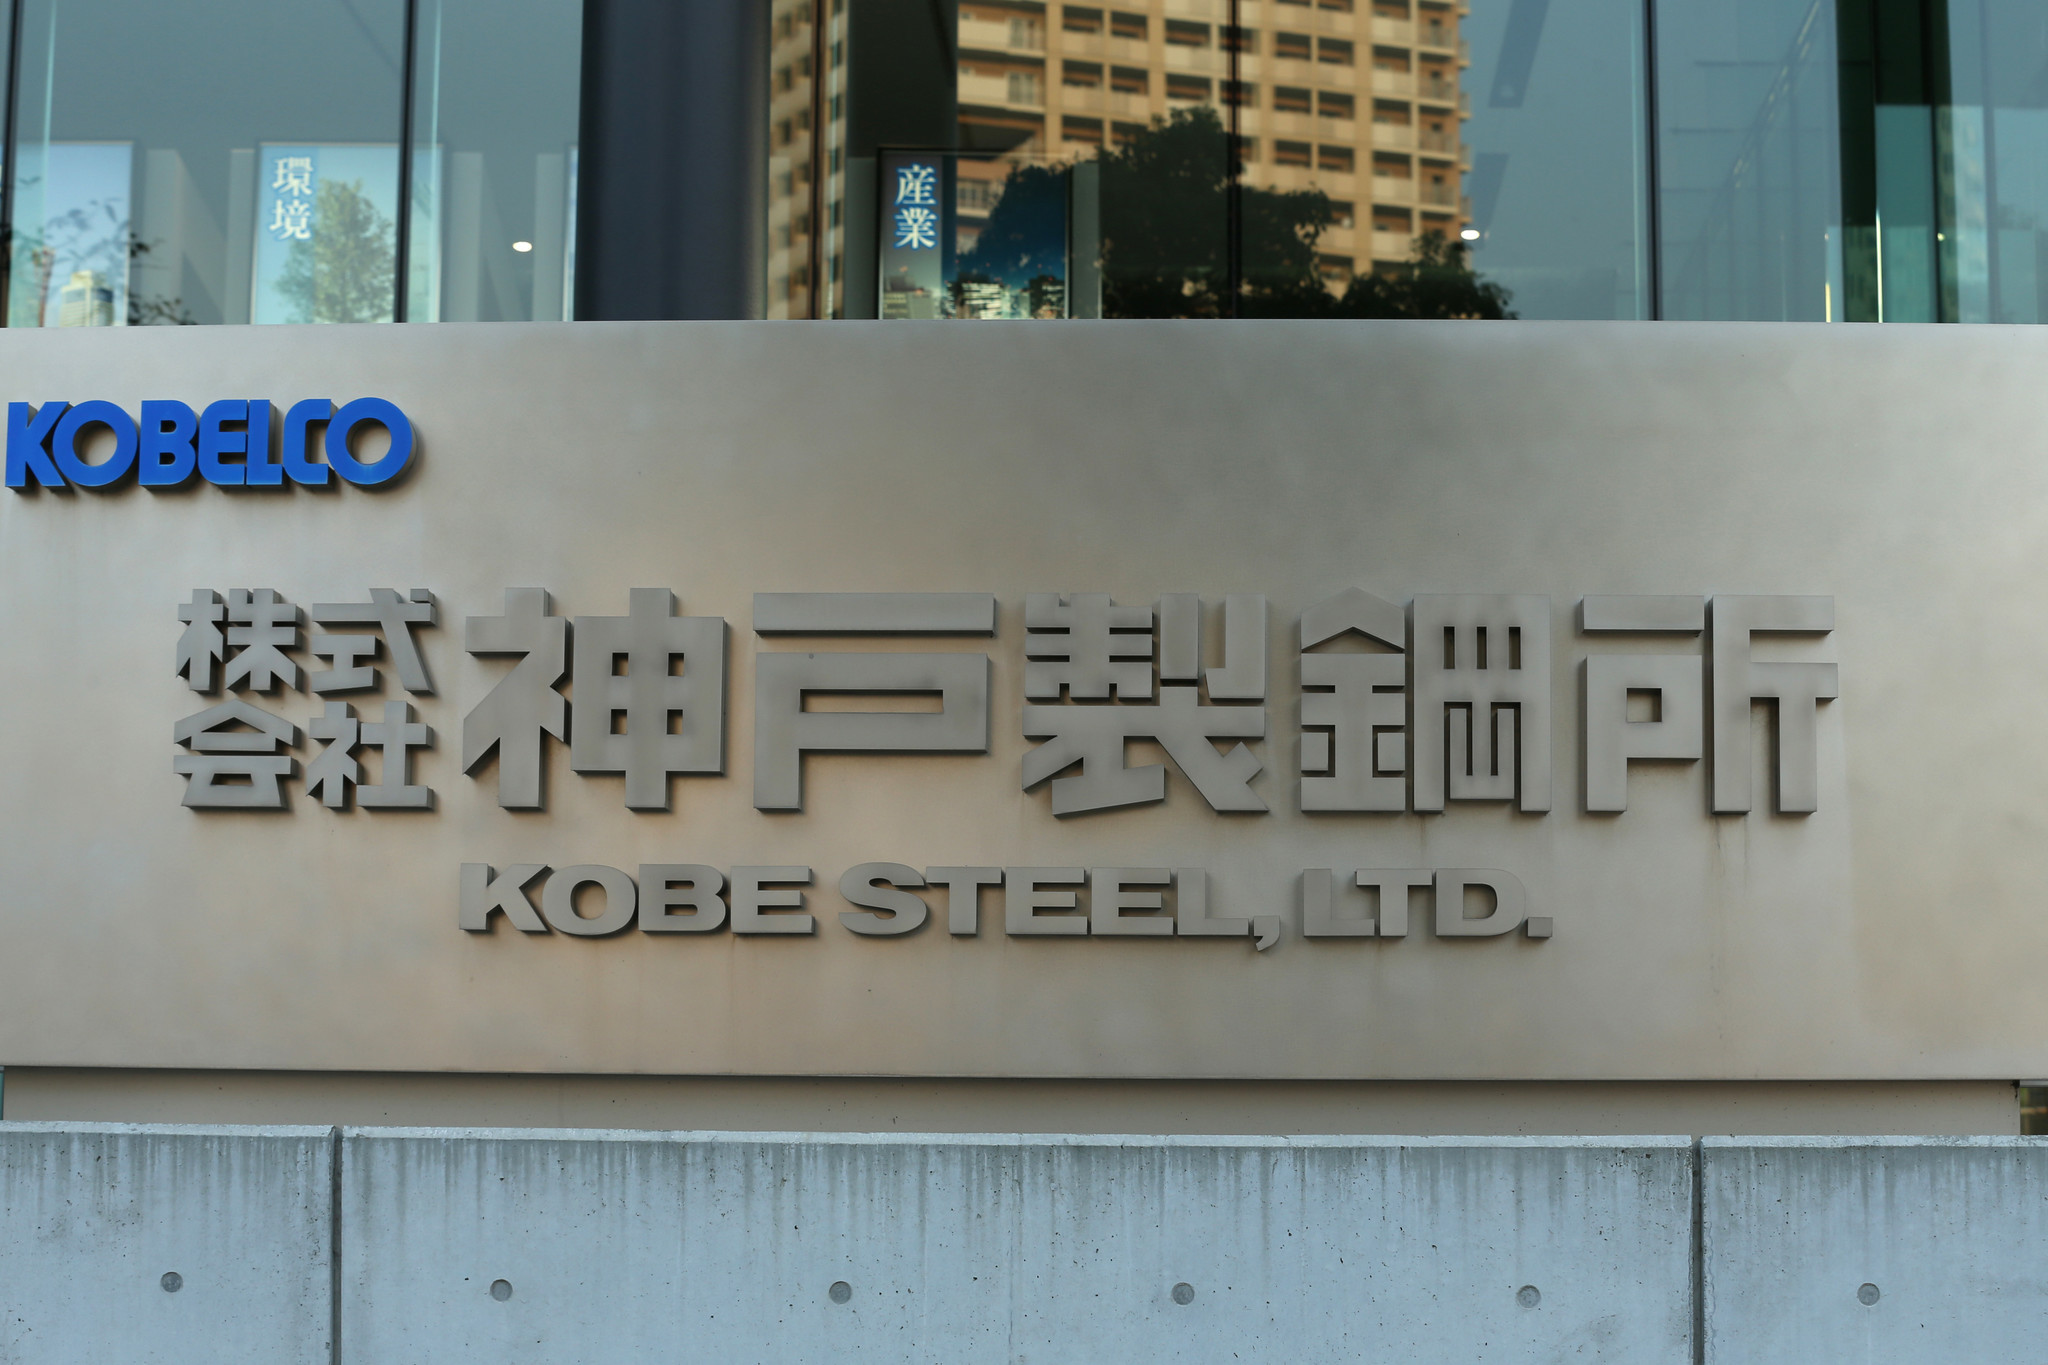 ct-biz-japan-kobe-steel-metal-scandal-20171010